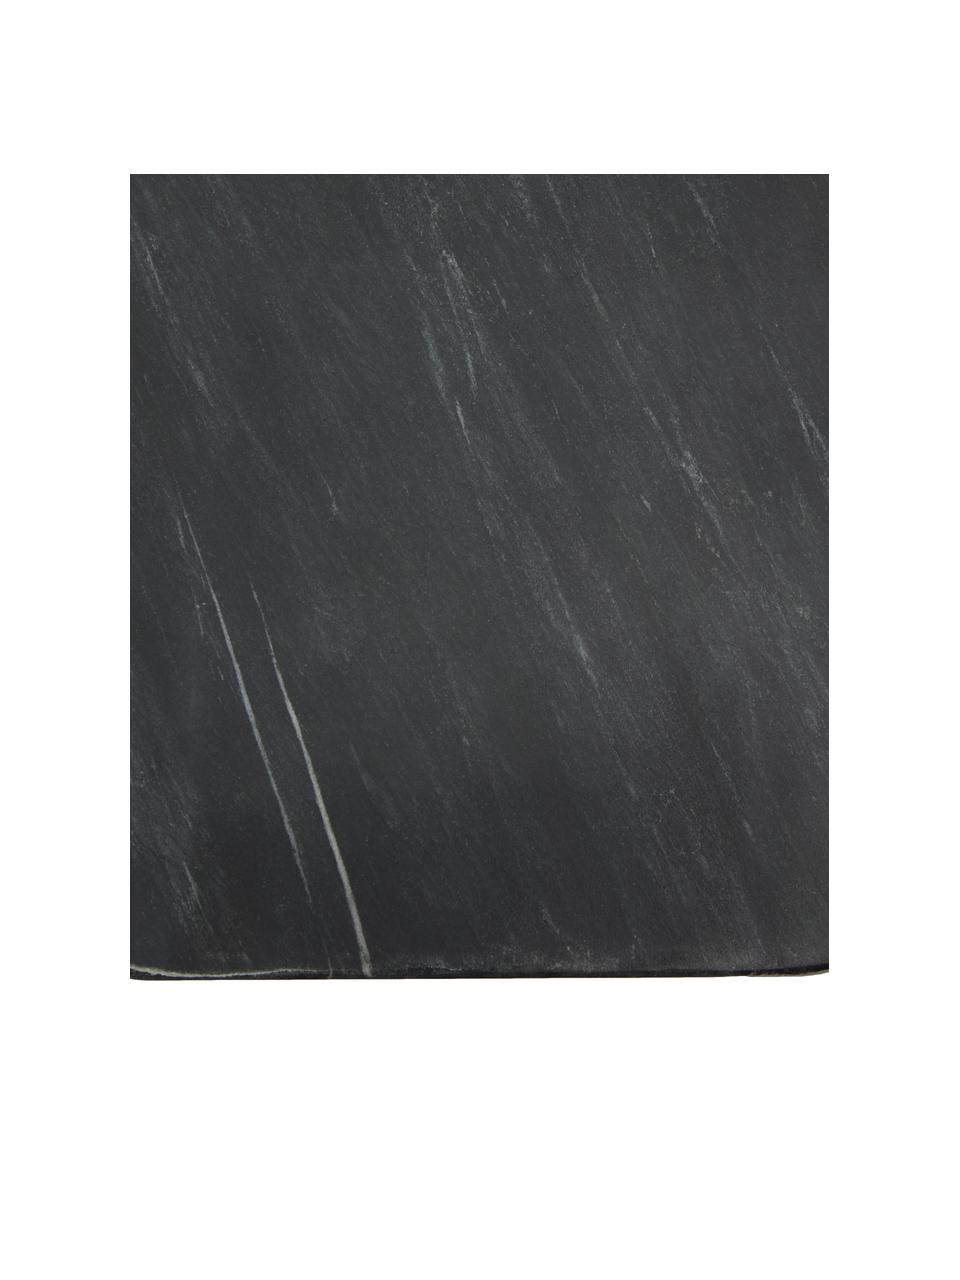 Mramorové prkénko s koženým řemínkem Johana, Černá, mramorovaná, D 38 cm, Š 15 cm